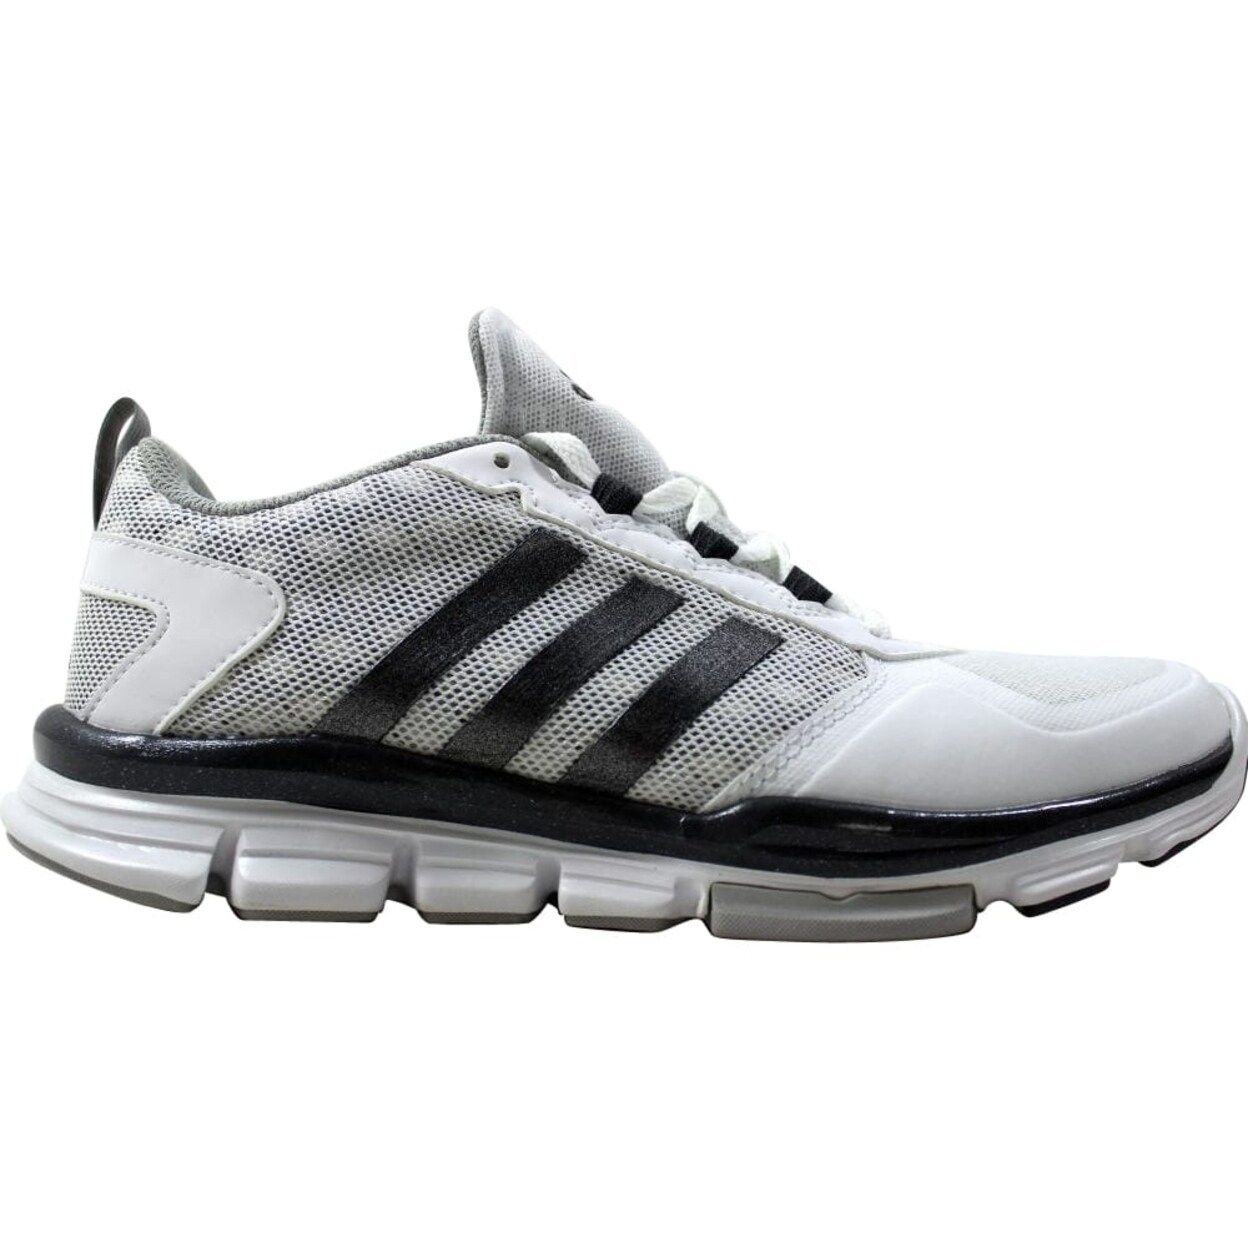 Adidas Speed Trainer 2 White/Grey 